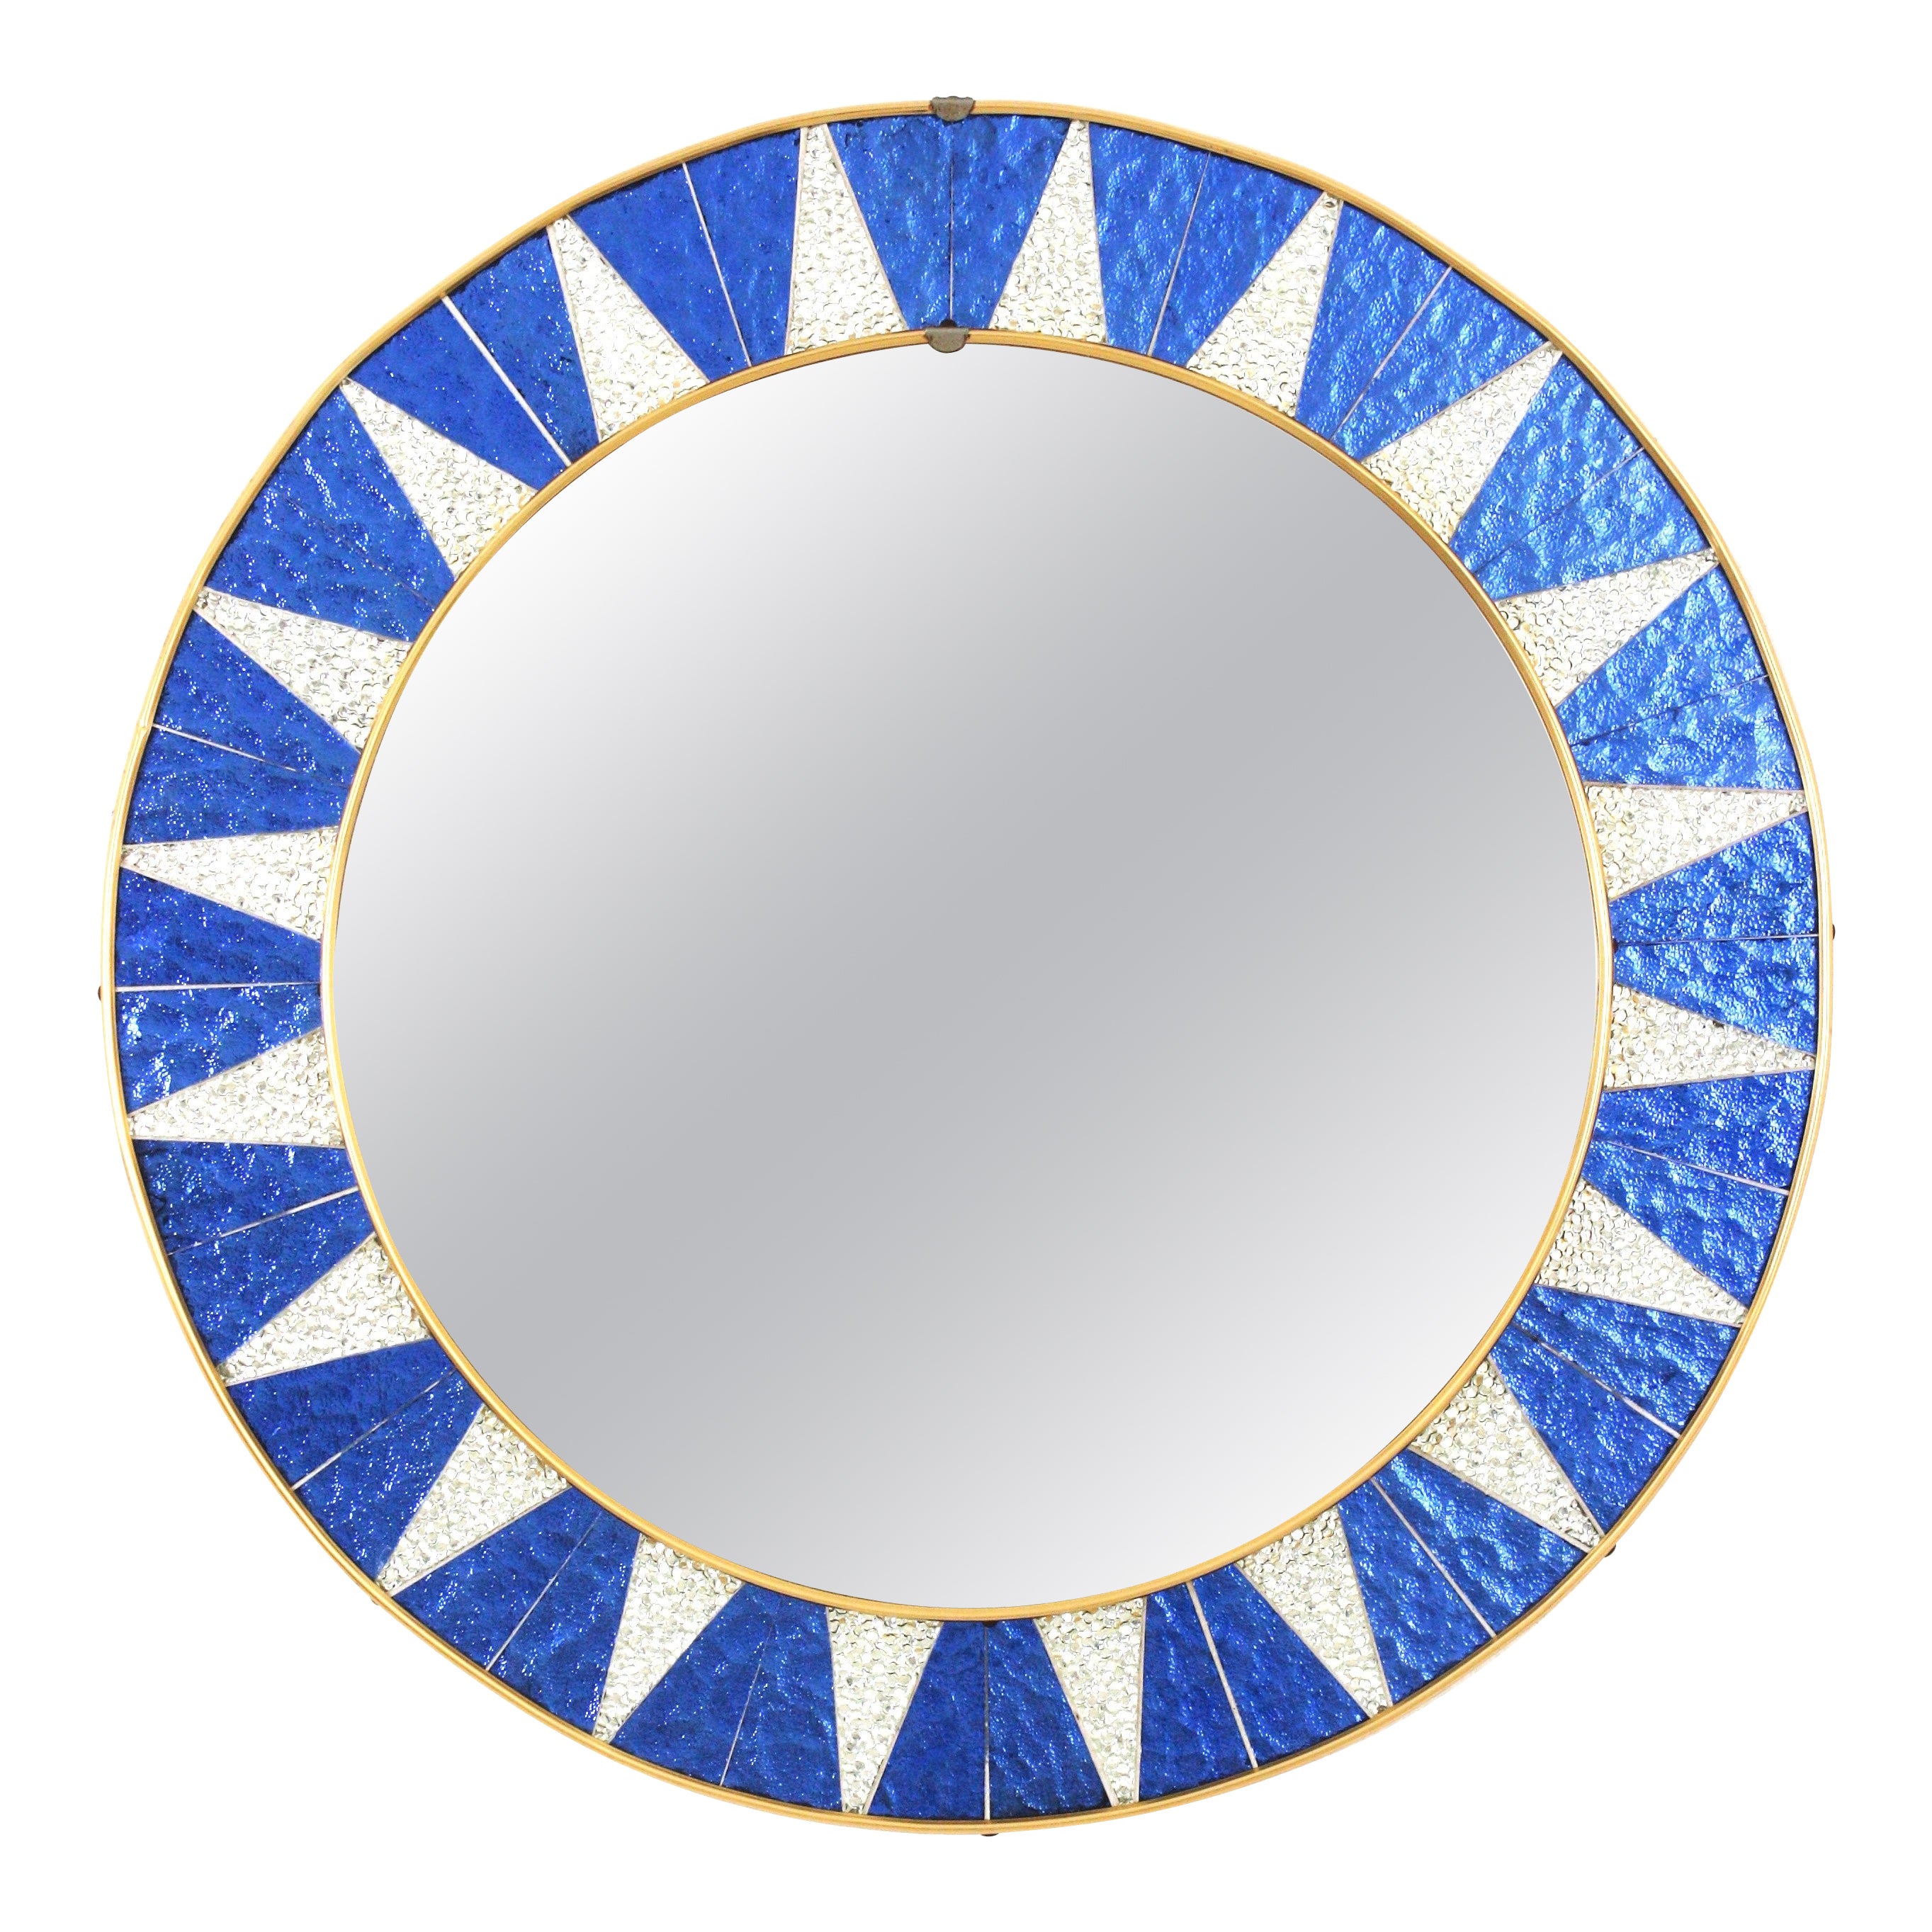 Sunburst-Spiegel mit blauem und versilbertem Mosaikglasrahmen, Spanien, 1960er Jahre